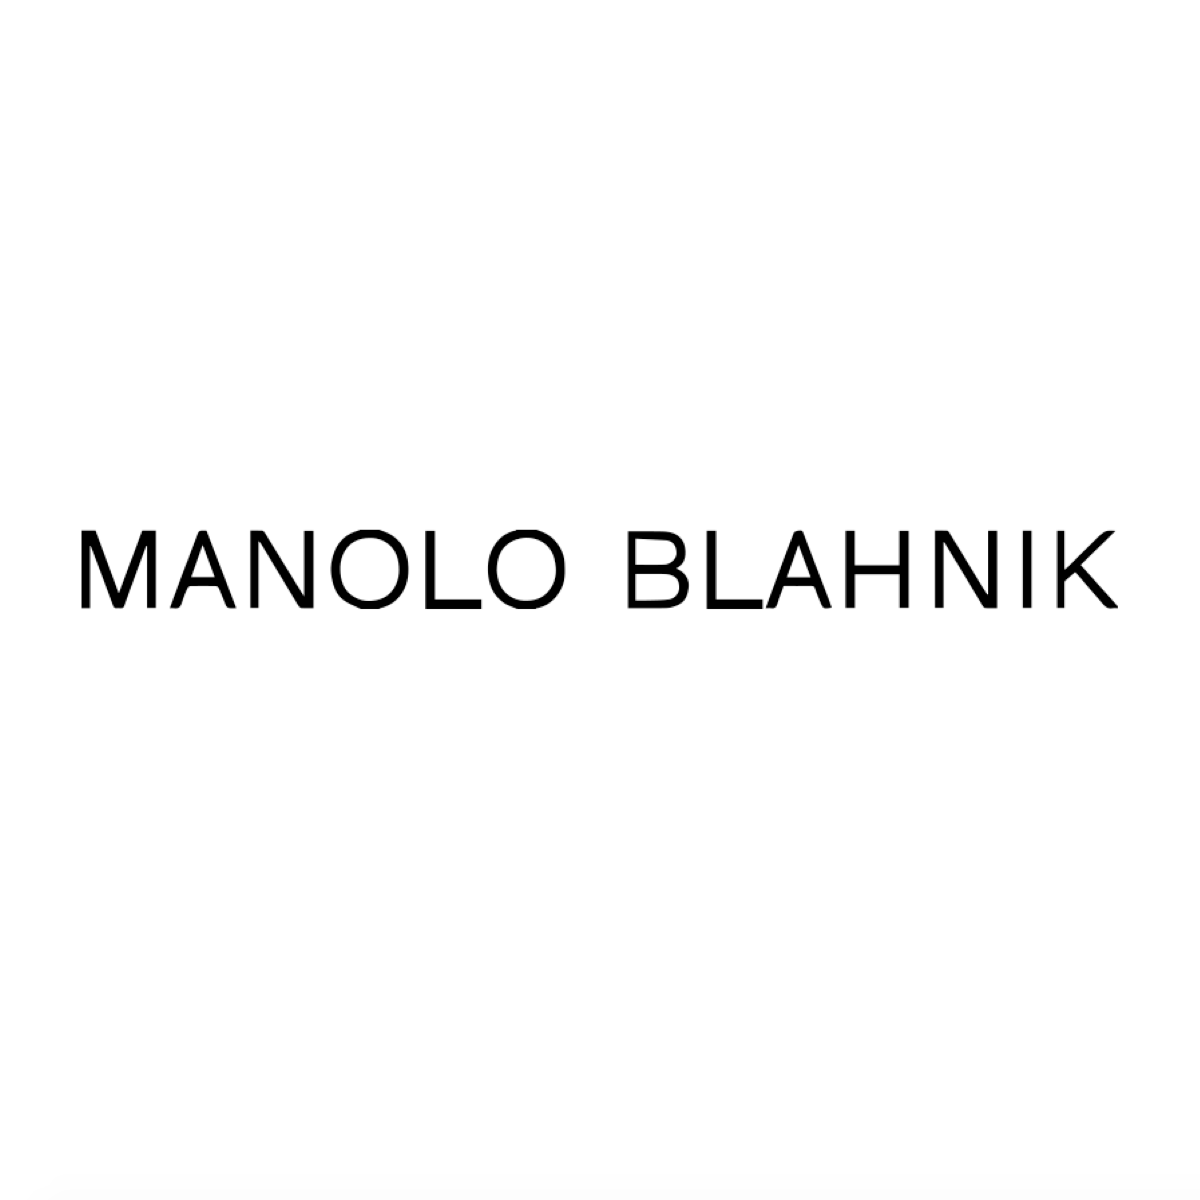 Manolo Blahnik.png